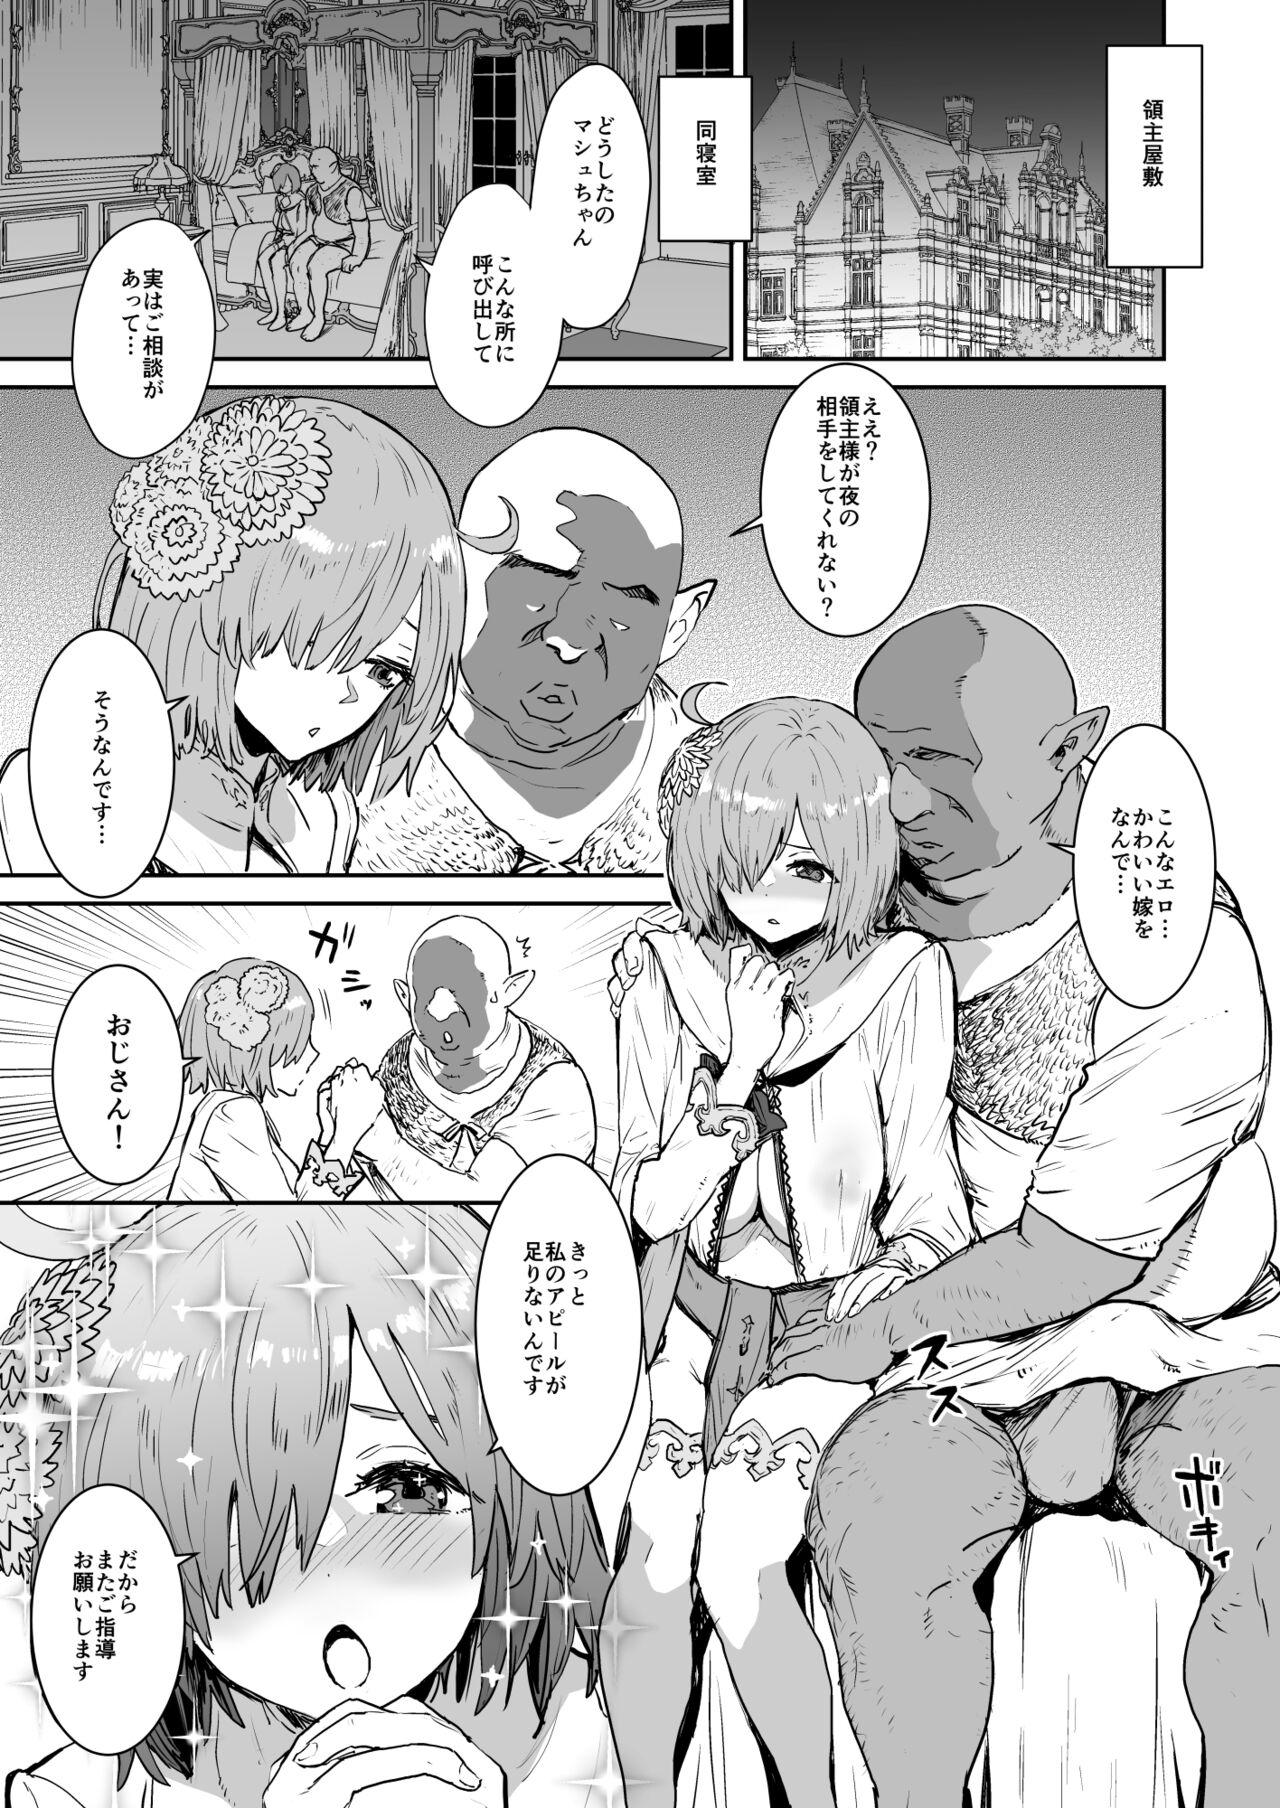 Ass To Mouth Mash no Hanayome Shugyou 2 - Fate grand order Girlsfucking - Page 4